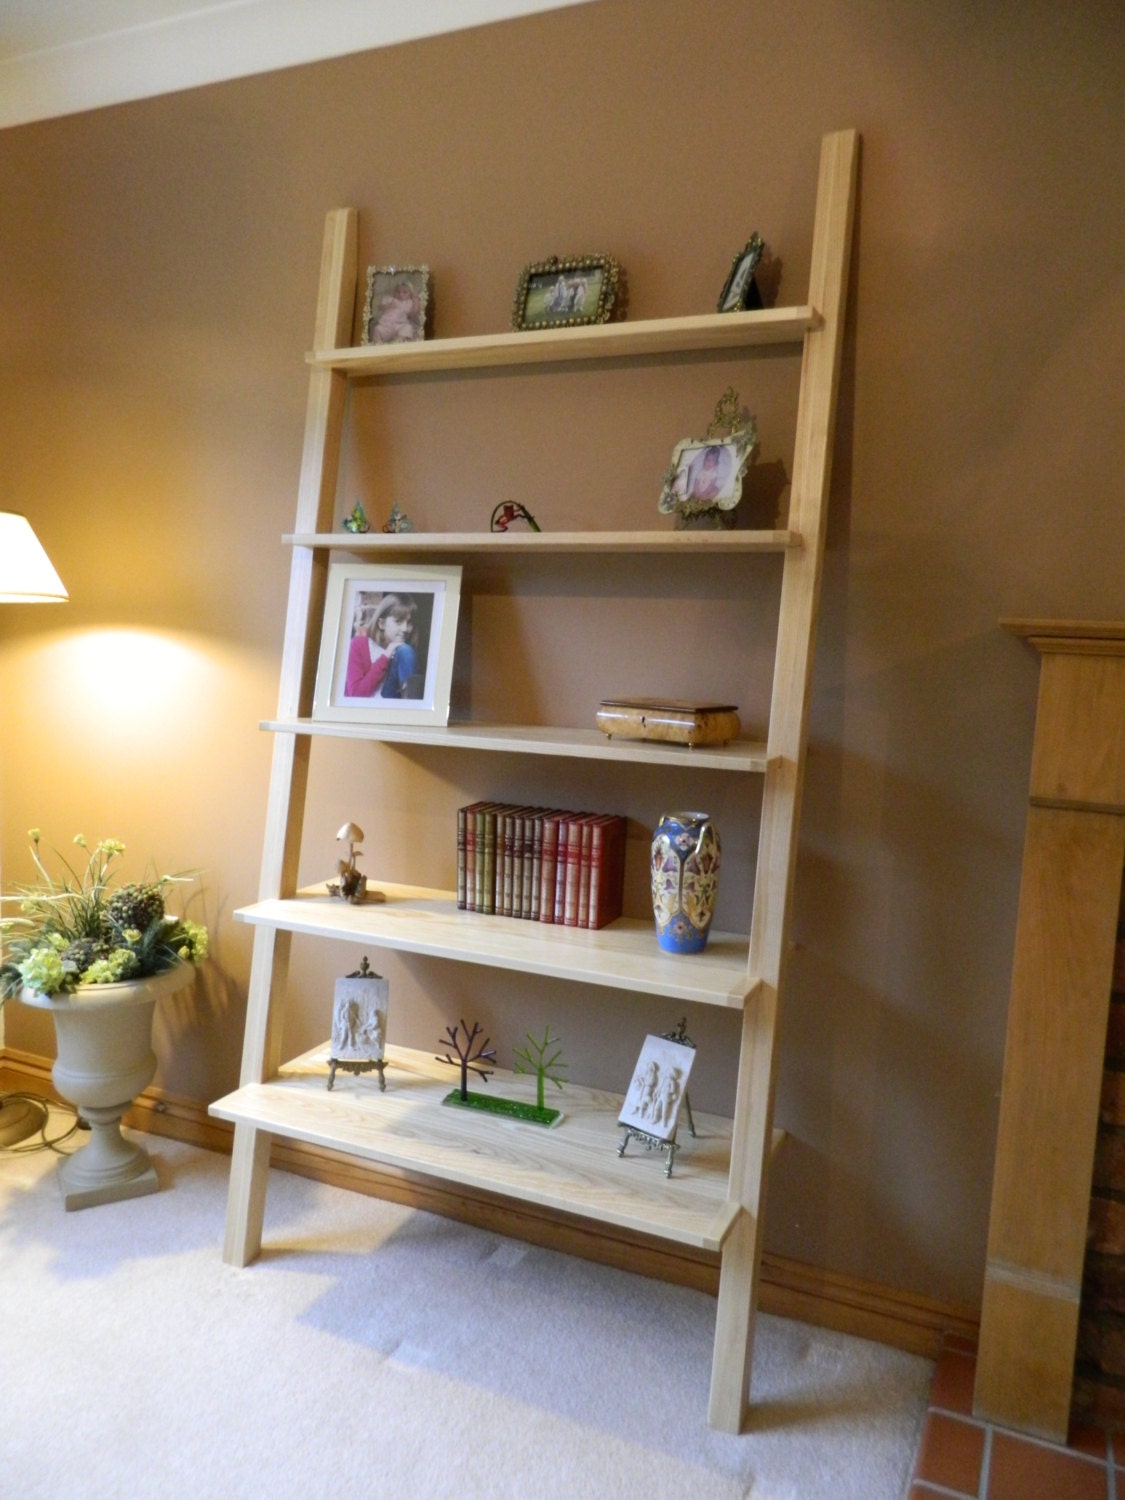 Ladder Shelving Unit, Freestanding Shelving Unit, Lean-too Bespoke Shelving  Units, Freestanding Wood Book Shelves 